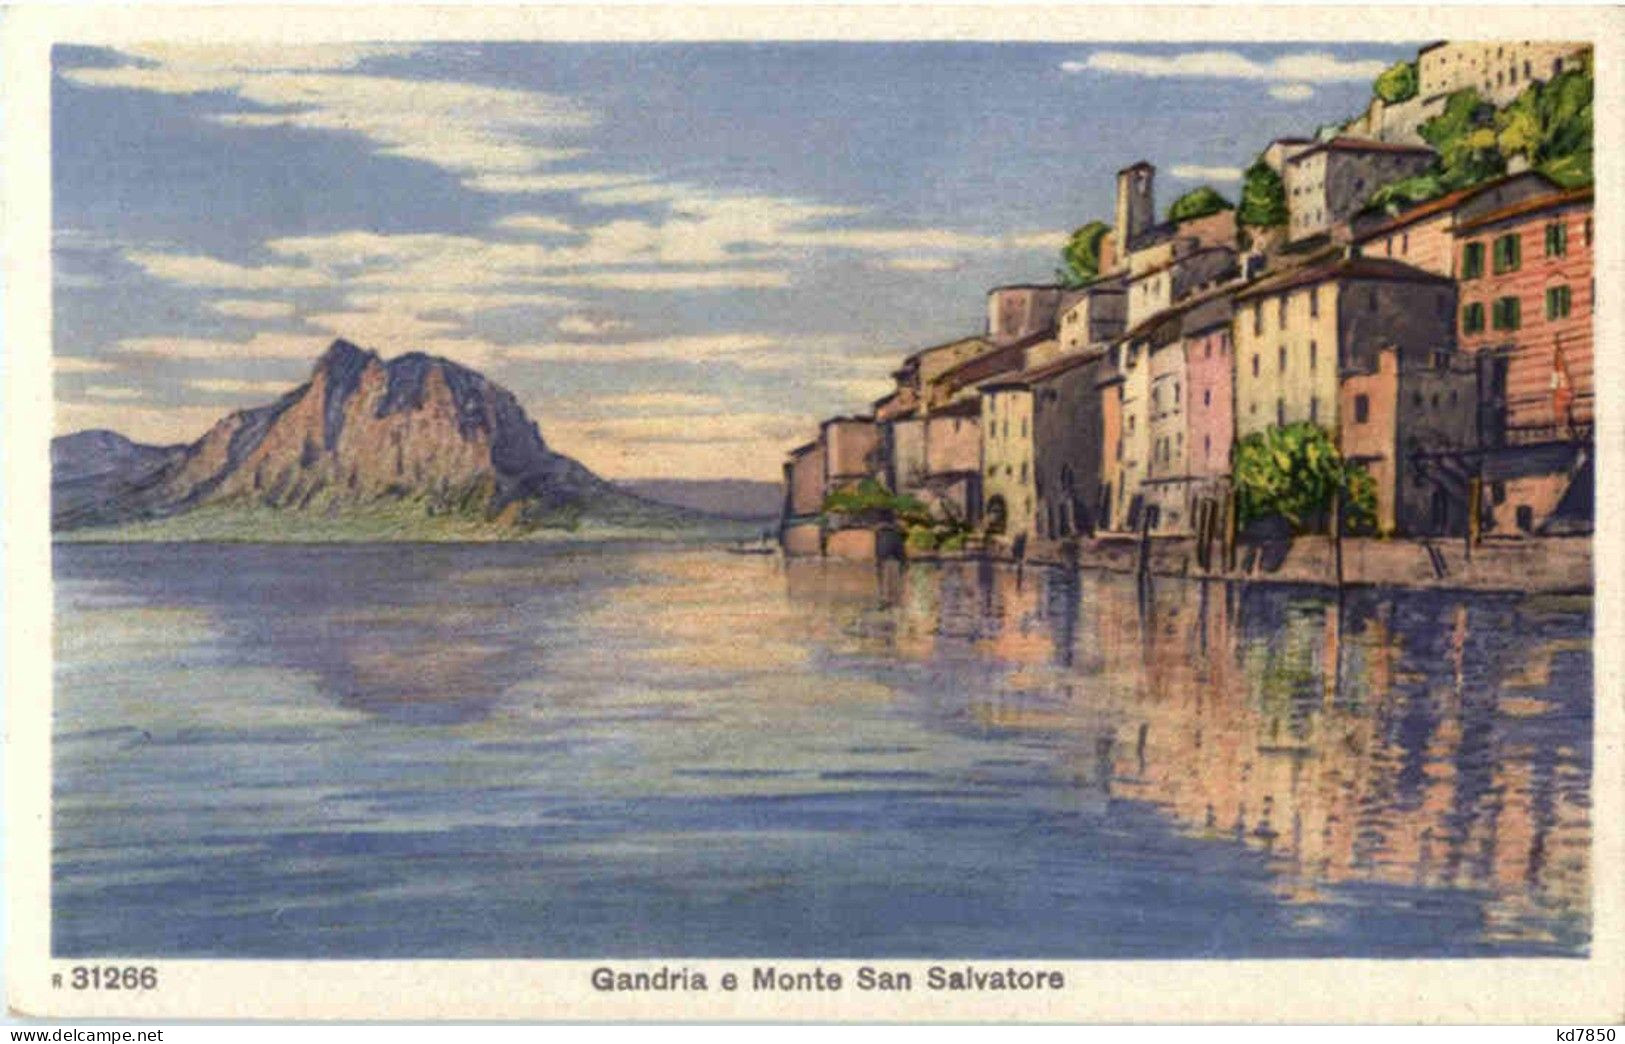 Gandria - Gandria 